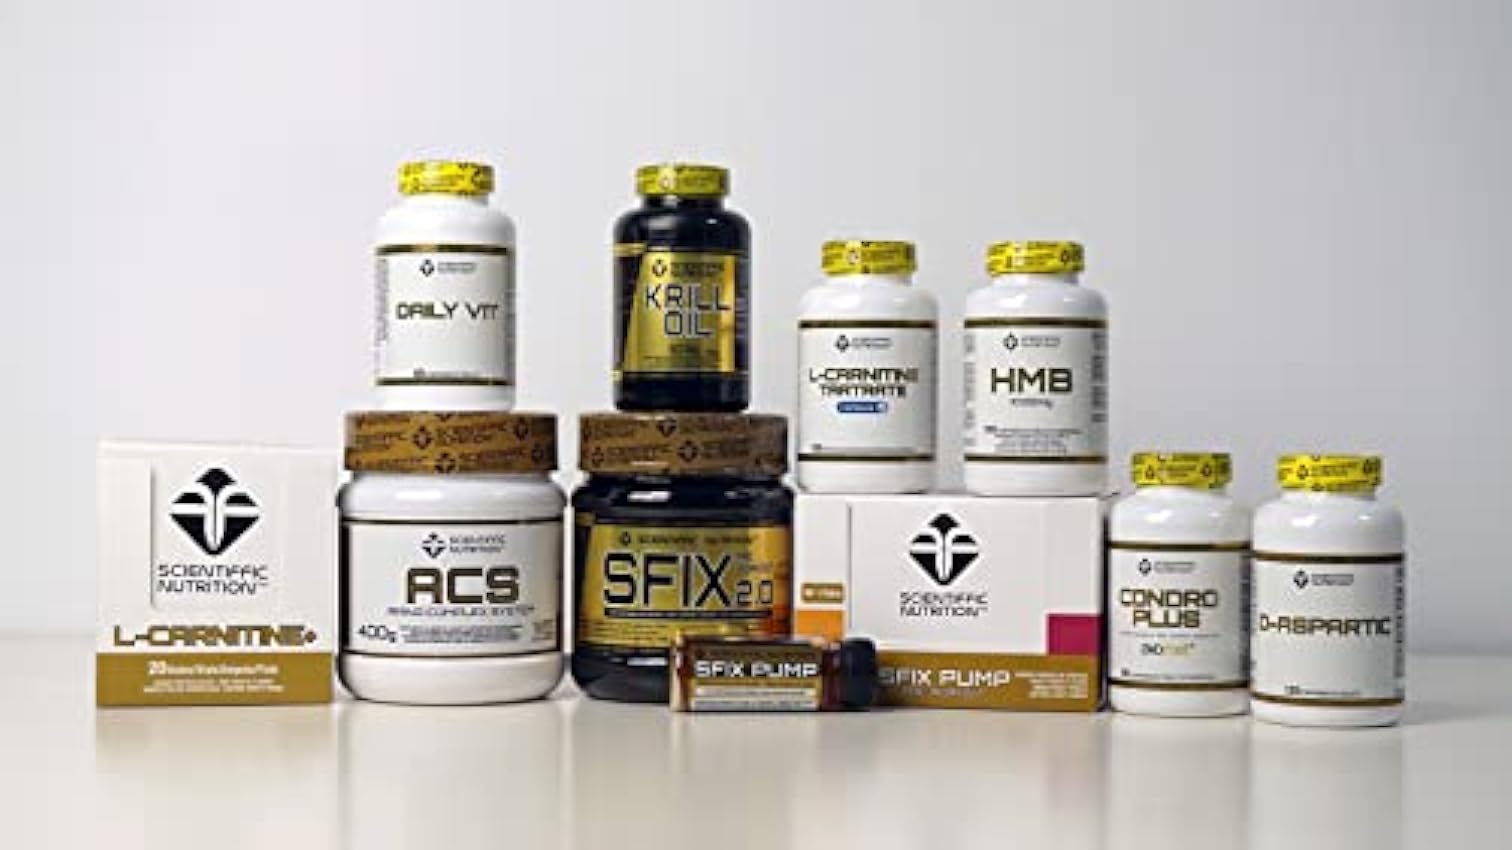 Scientiffic Nutrition - ACS, Aminoácidos Esenciales con Alto Nivel de Proteínas, Combina 9 Tipos de Aminoácidos, Aumenta la Masa Muscular y Mejora la Recuperación - 400g, Sabor Cereza. FqDBNgZ3